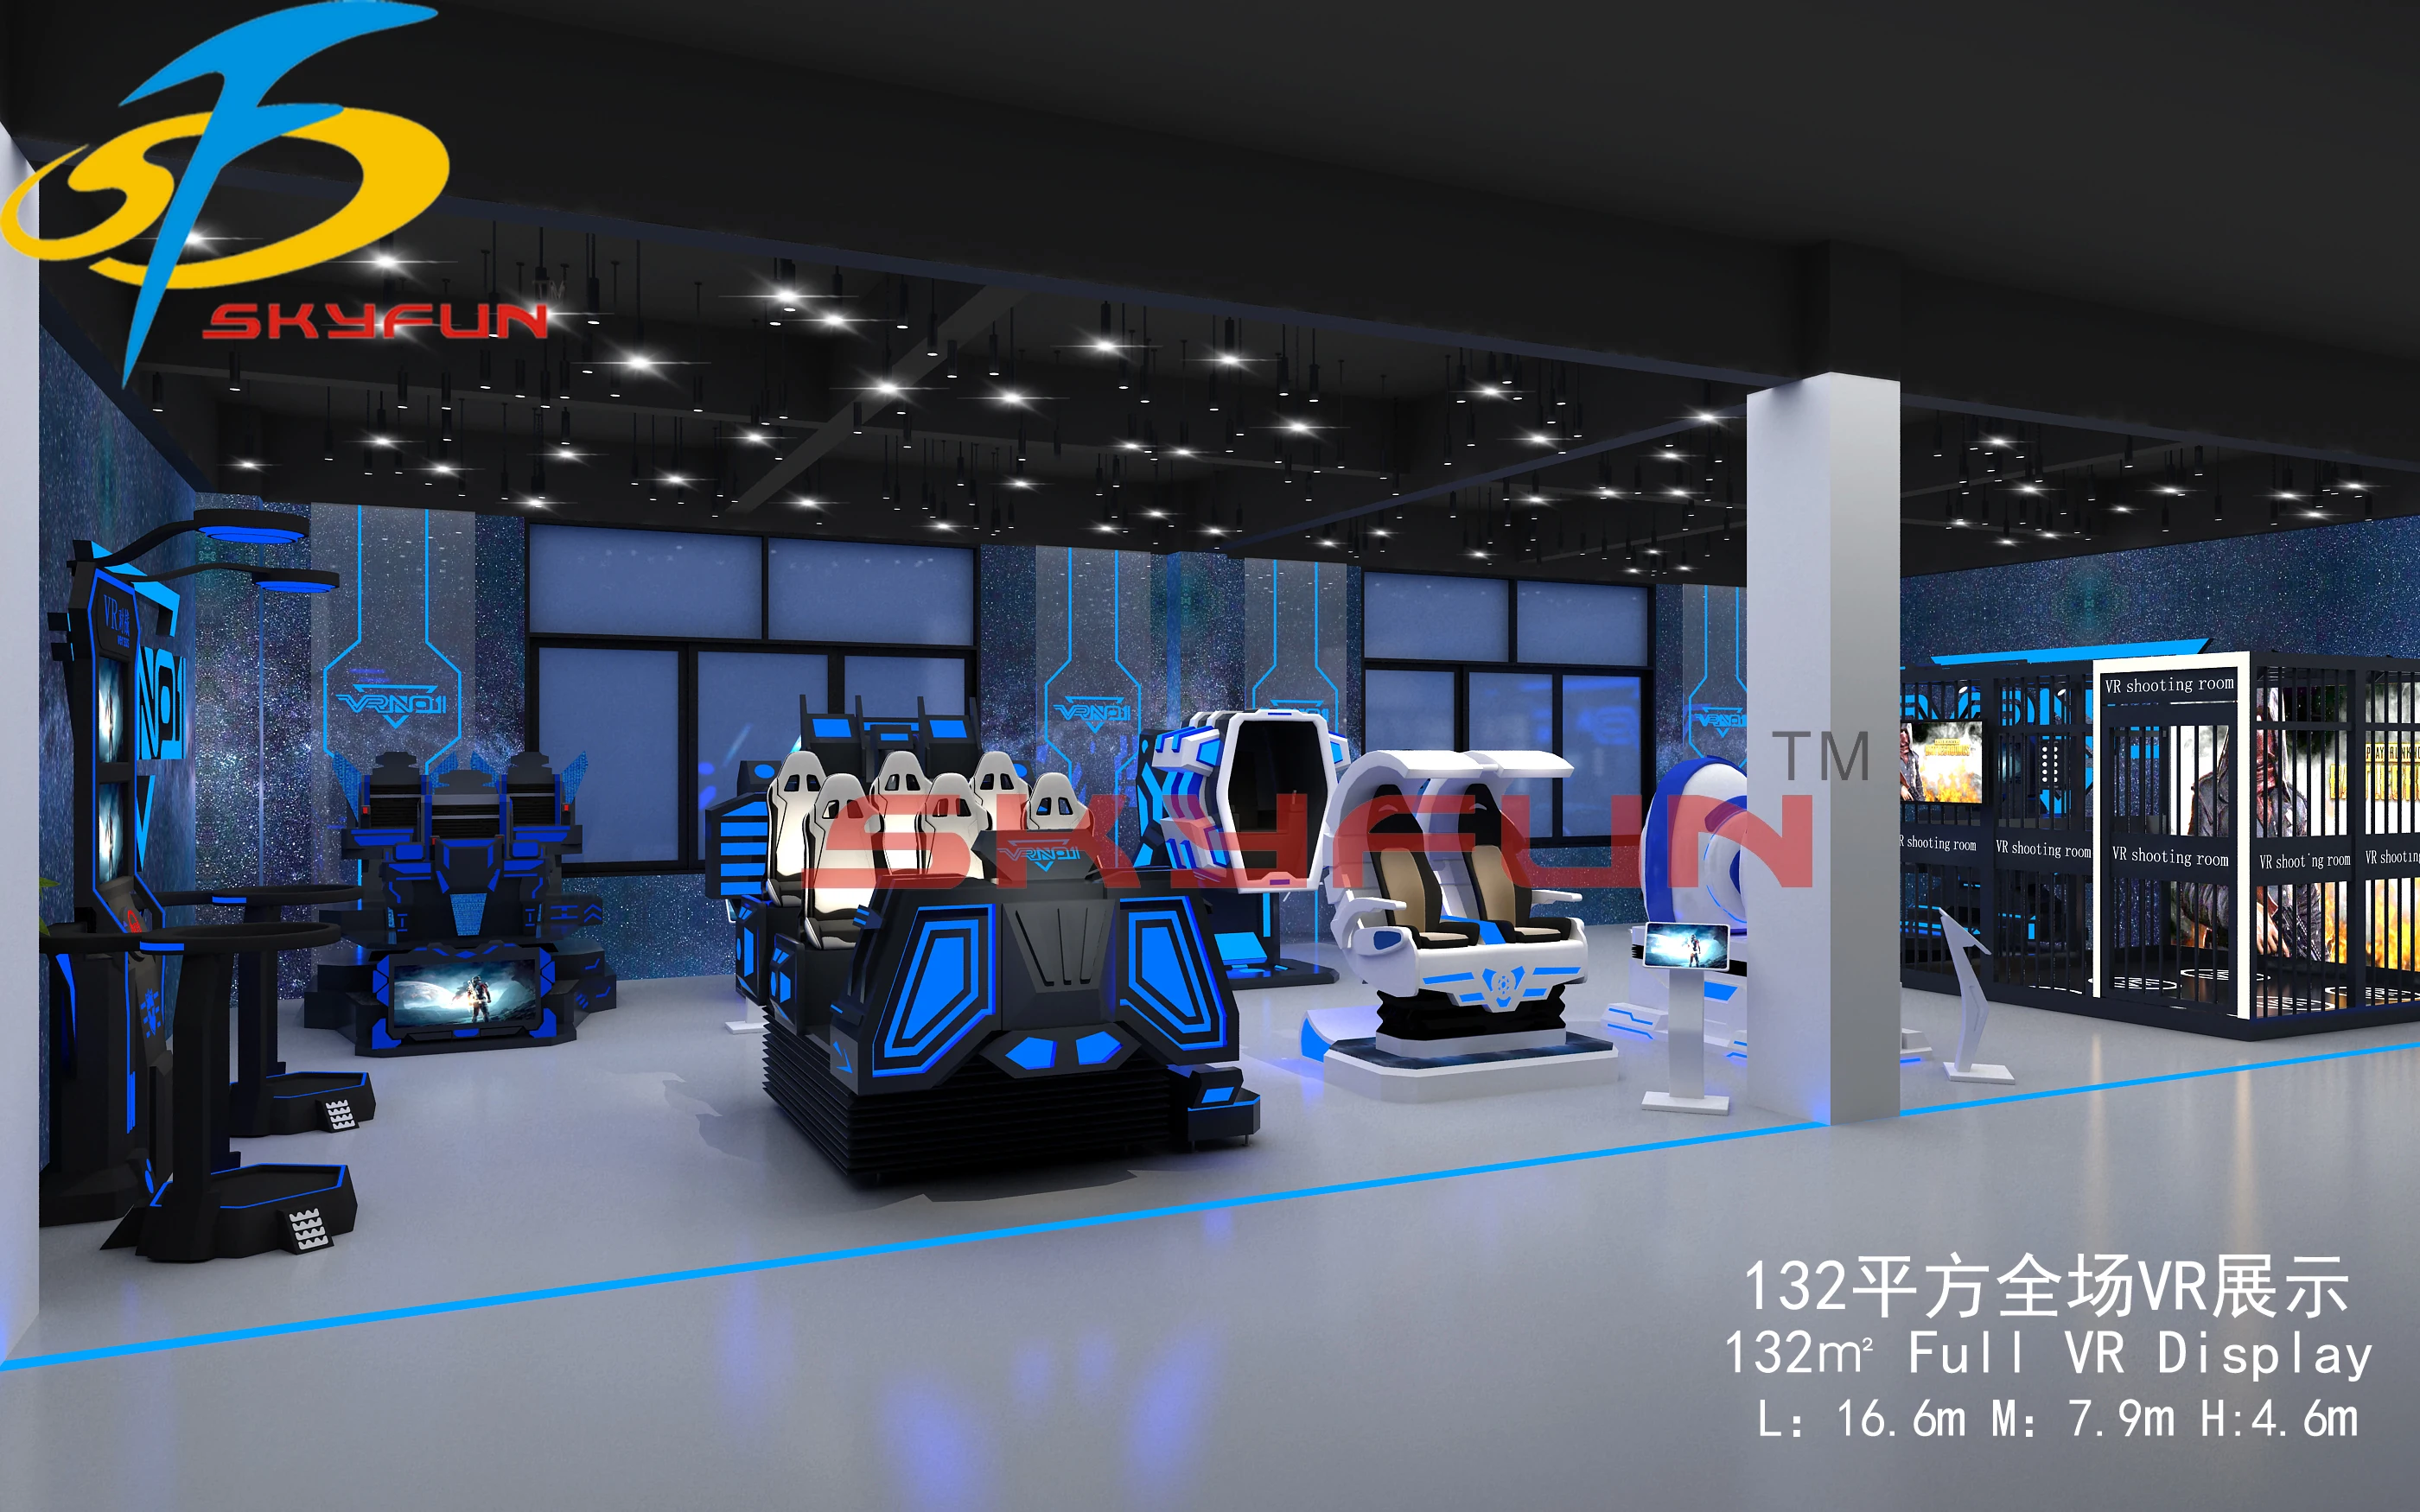 Кинотеатр 360 купить билеты. Кинотеатр 360 VR. Парк VR Star в Китае.